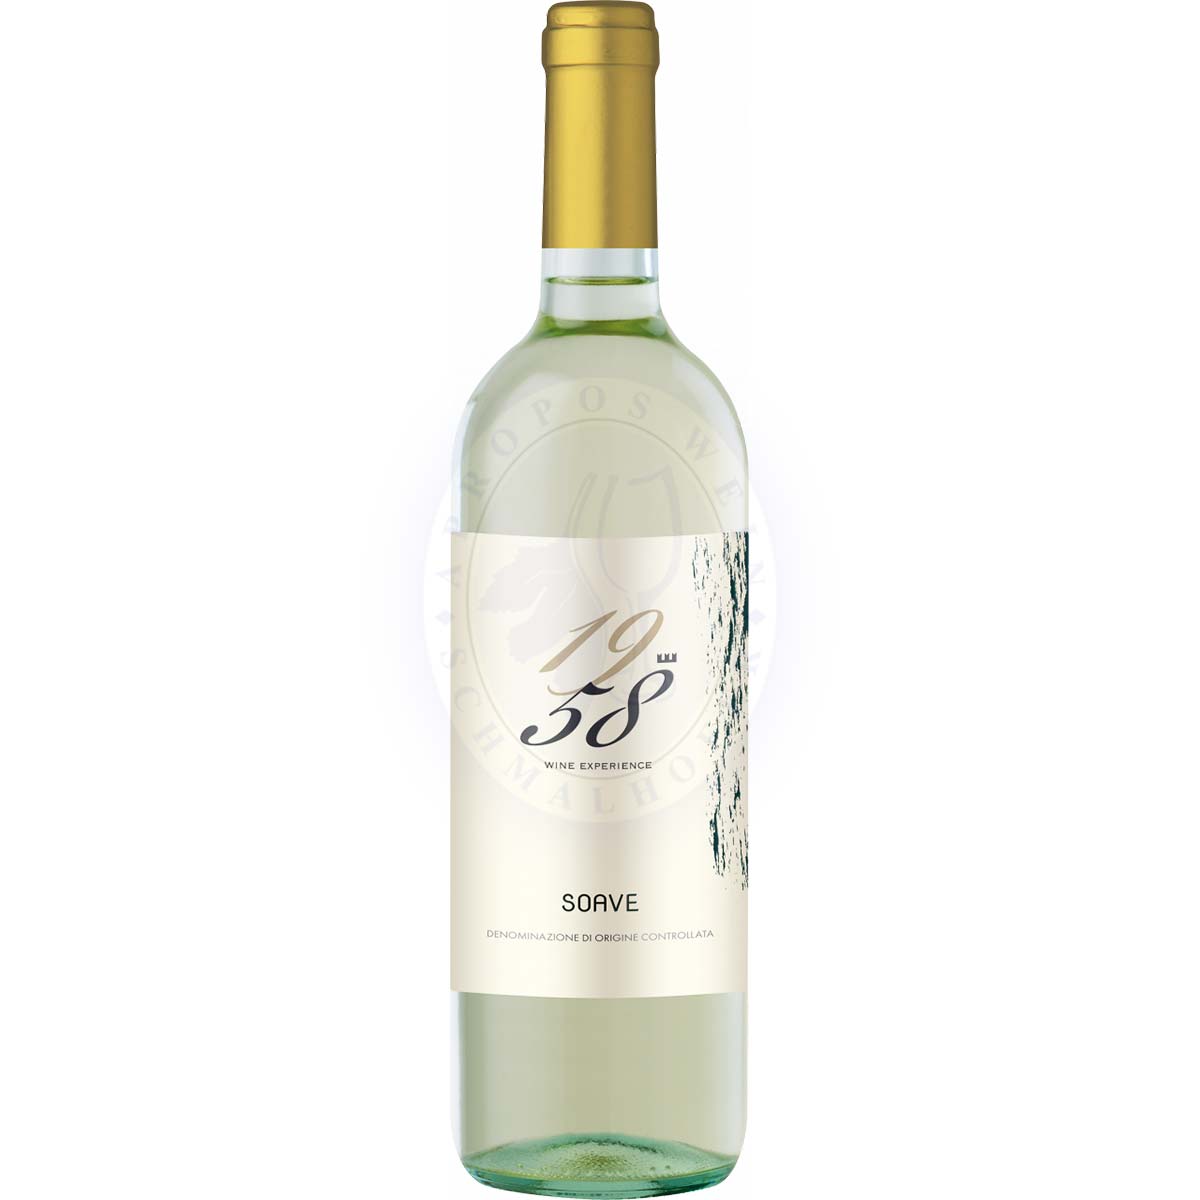 Soave - "1958 Wine Experience" Soave DOC Castelnuovo del Garda 2021 0,75l